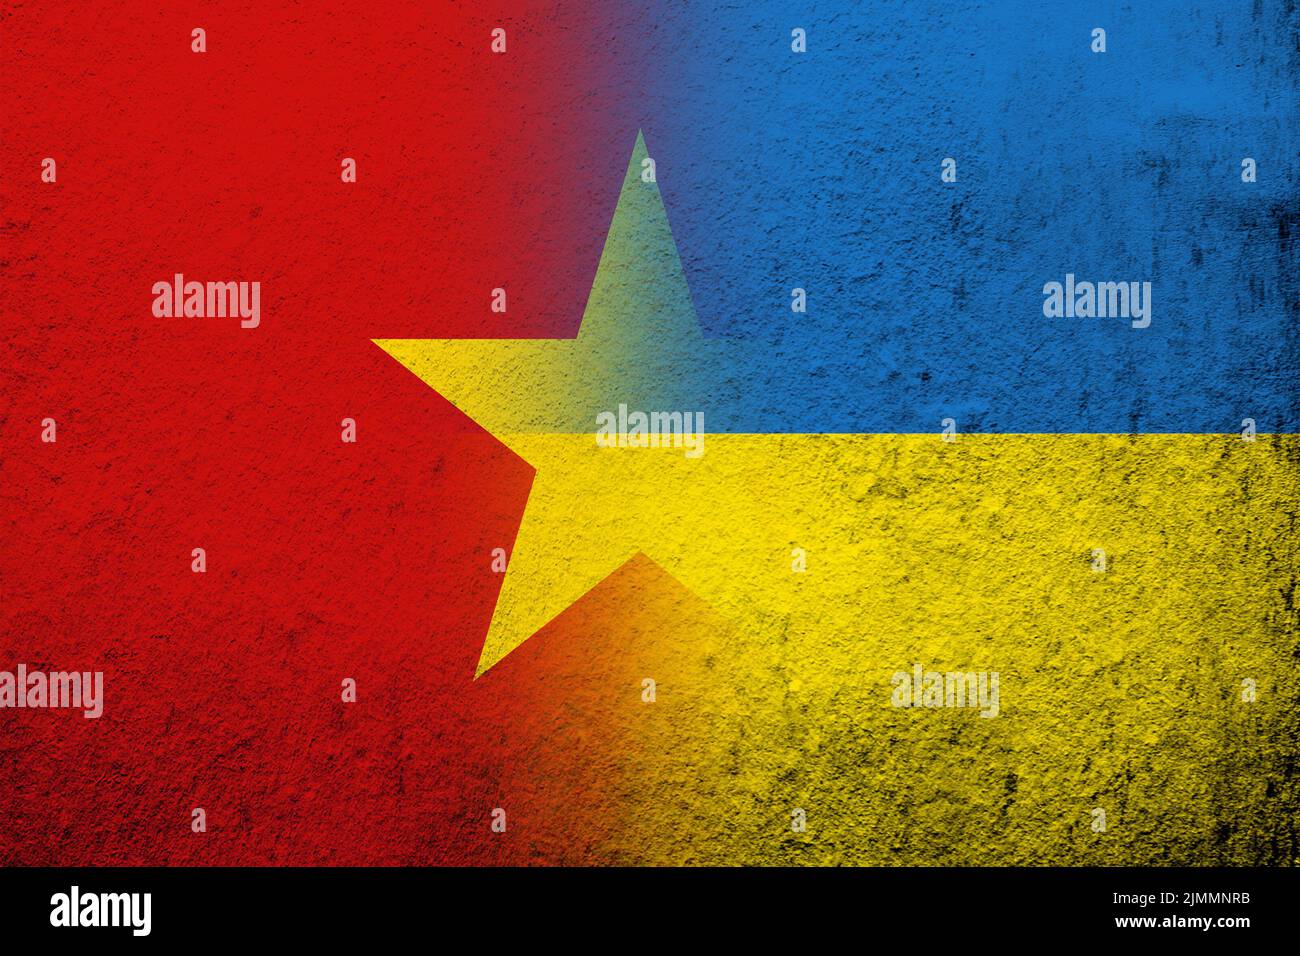 La République socialiste du Vietnam drapeau national avec drapeau national de l'Ukraine. Grunge l'arrière-plan Banque D'Images